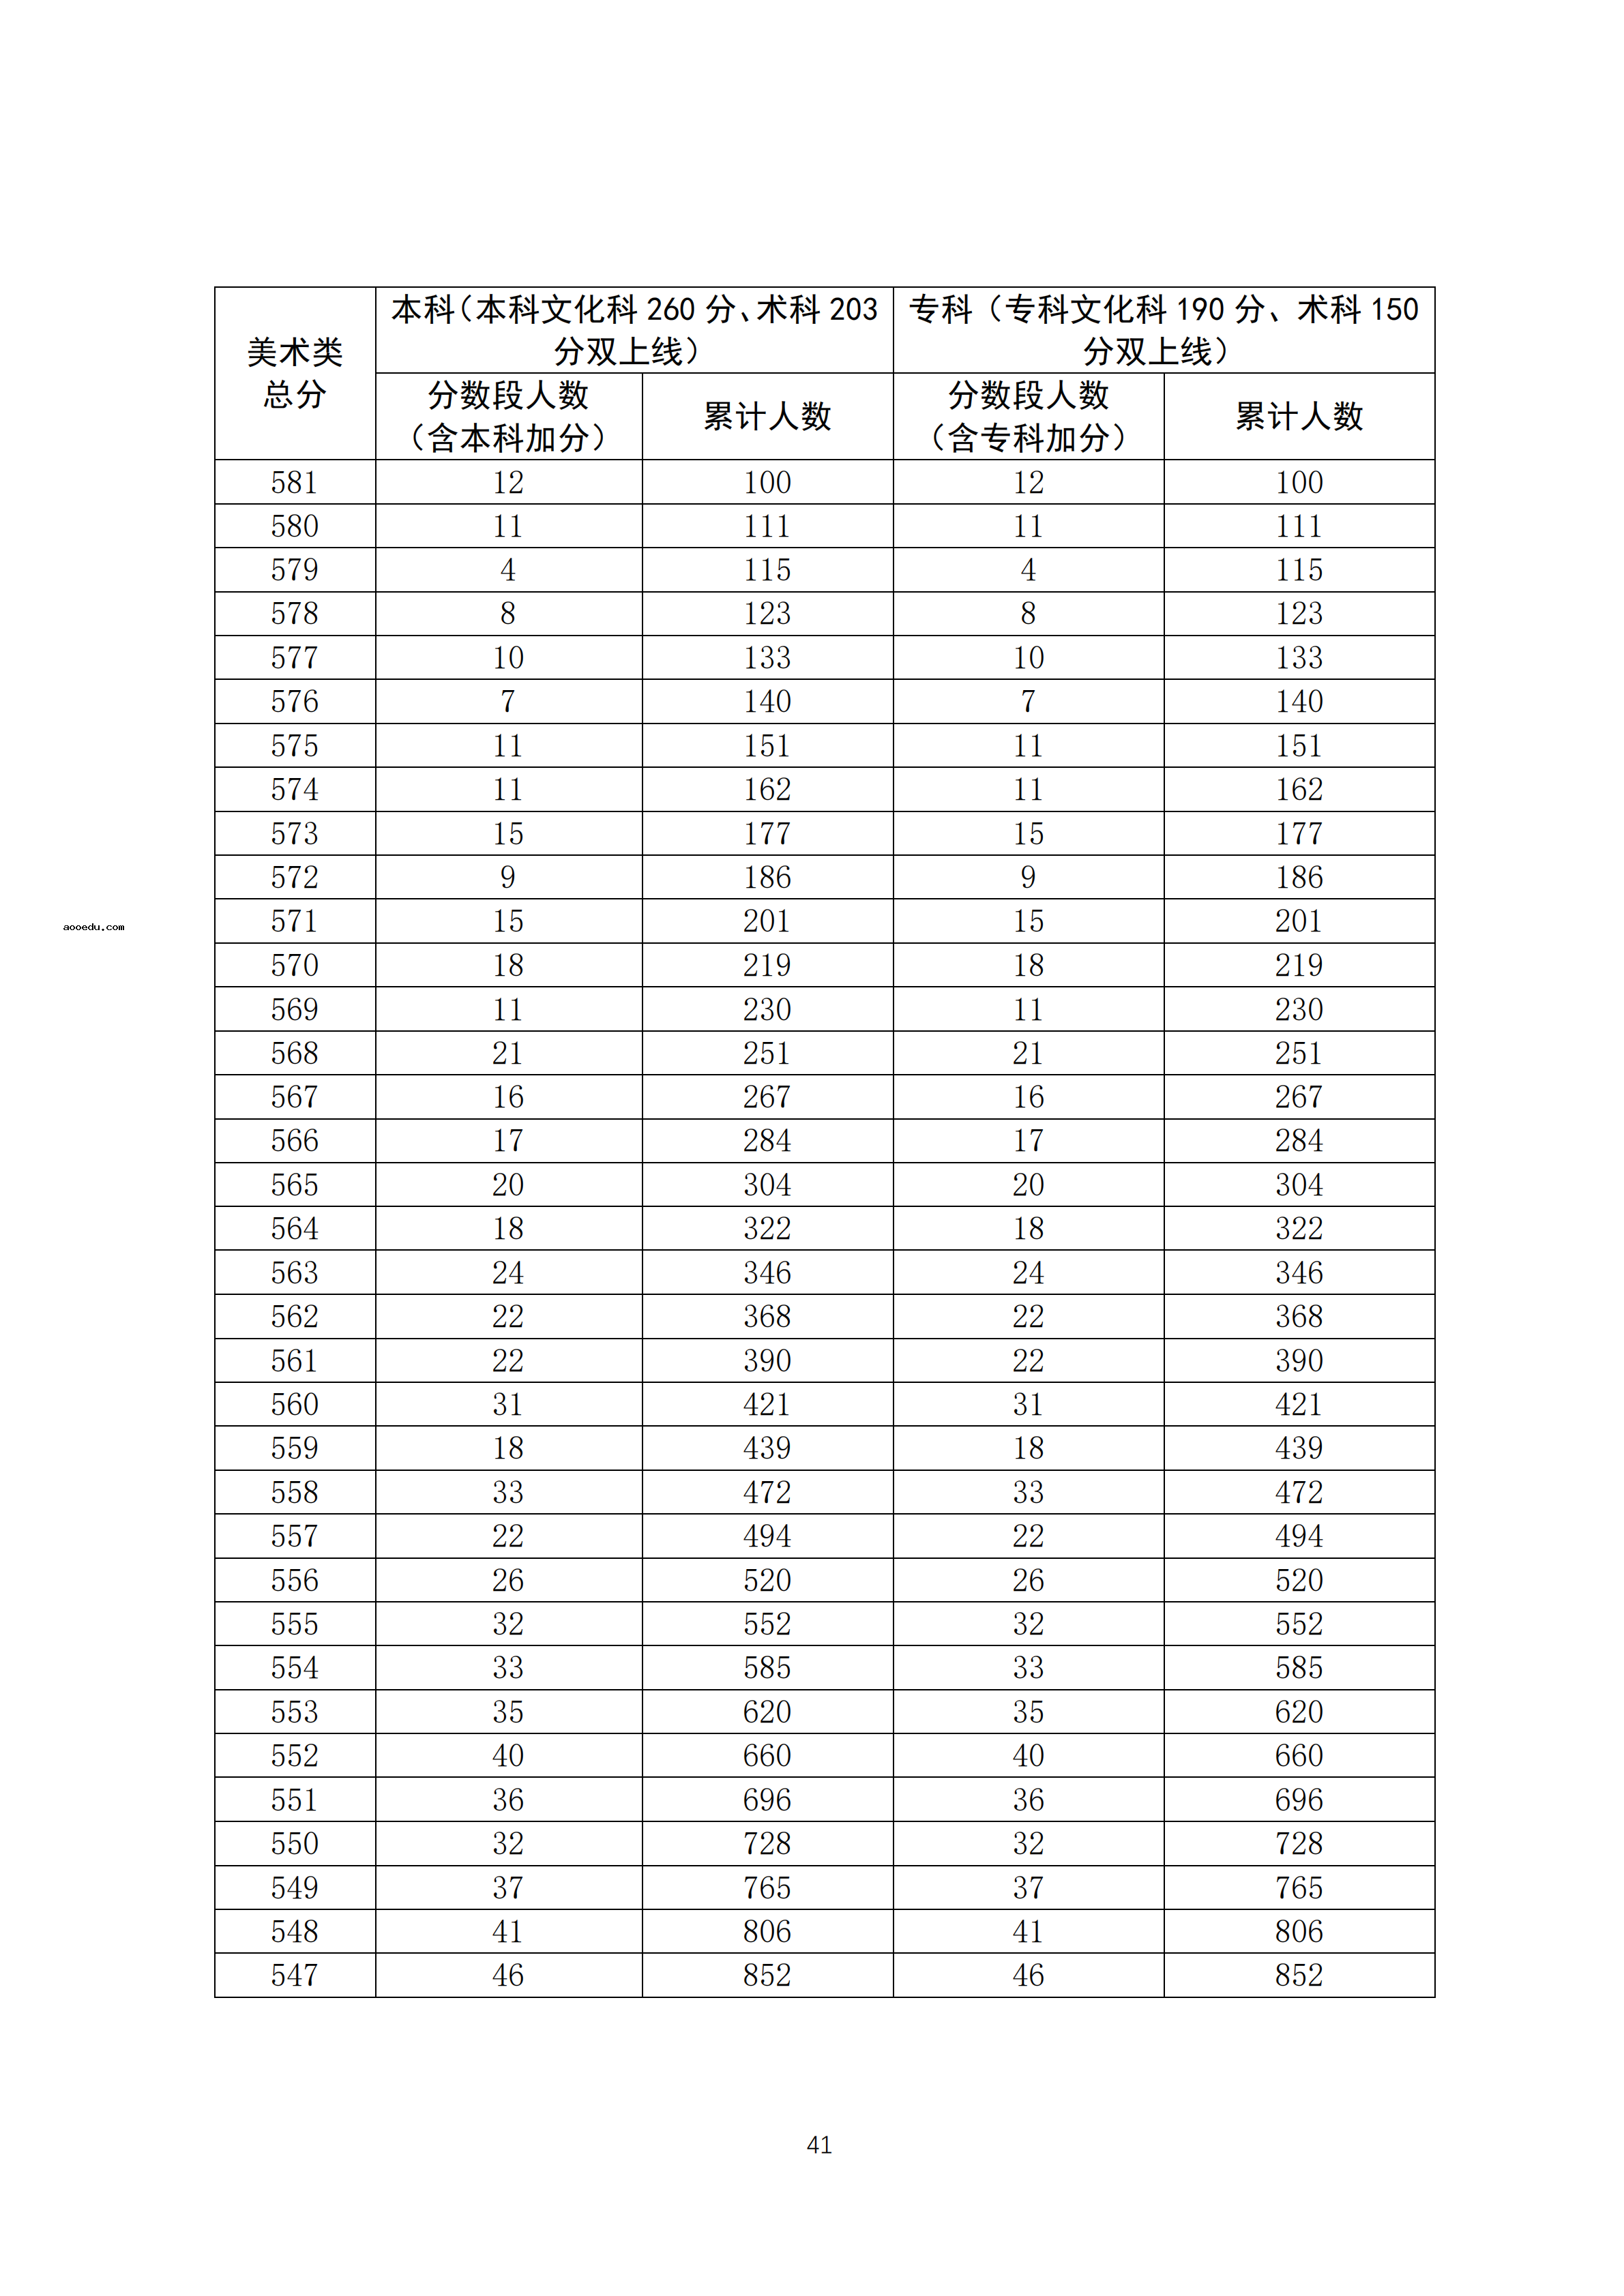 2020广东高考一分一段表 美术类成绩排名